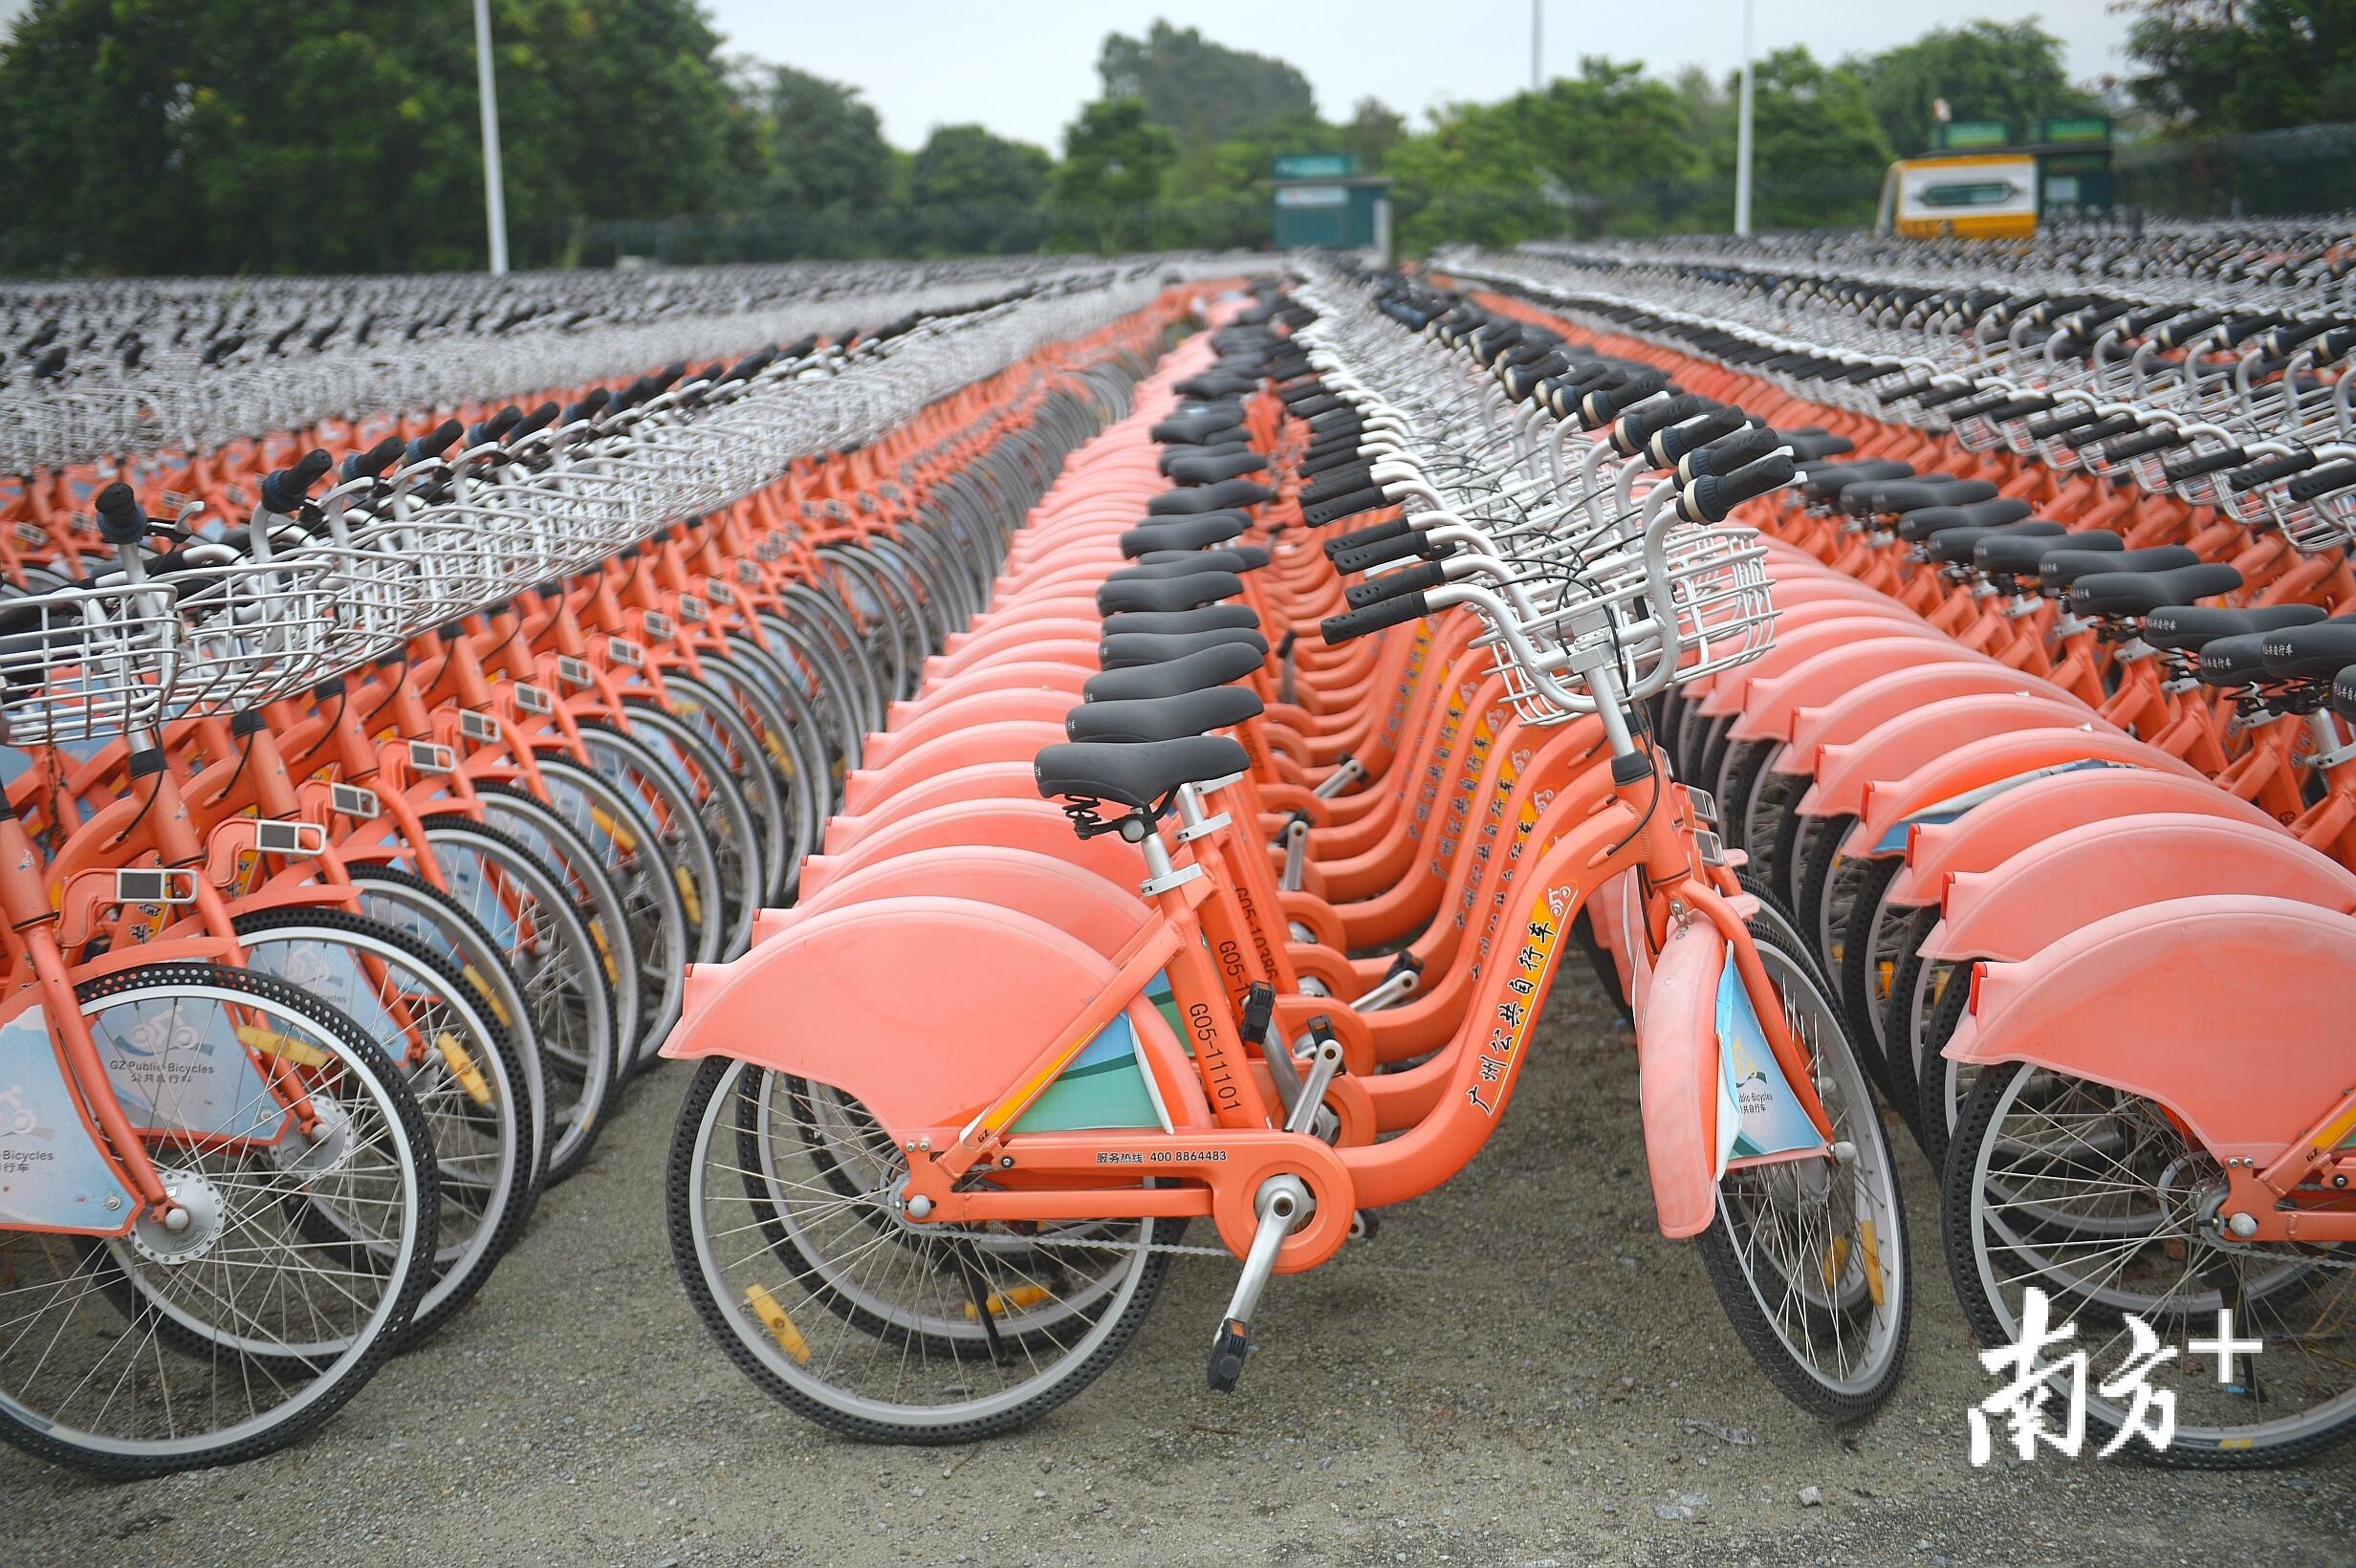 广州公共自行车退出历史舞台,2万辆公共自行车在大学城停放